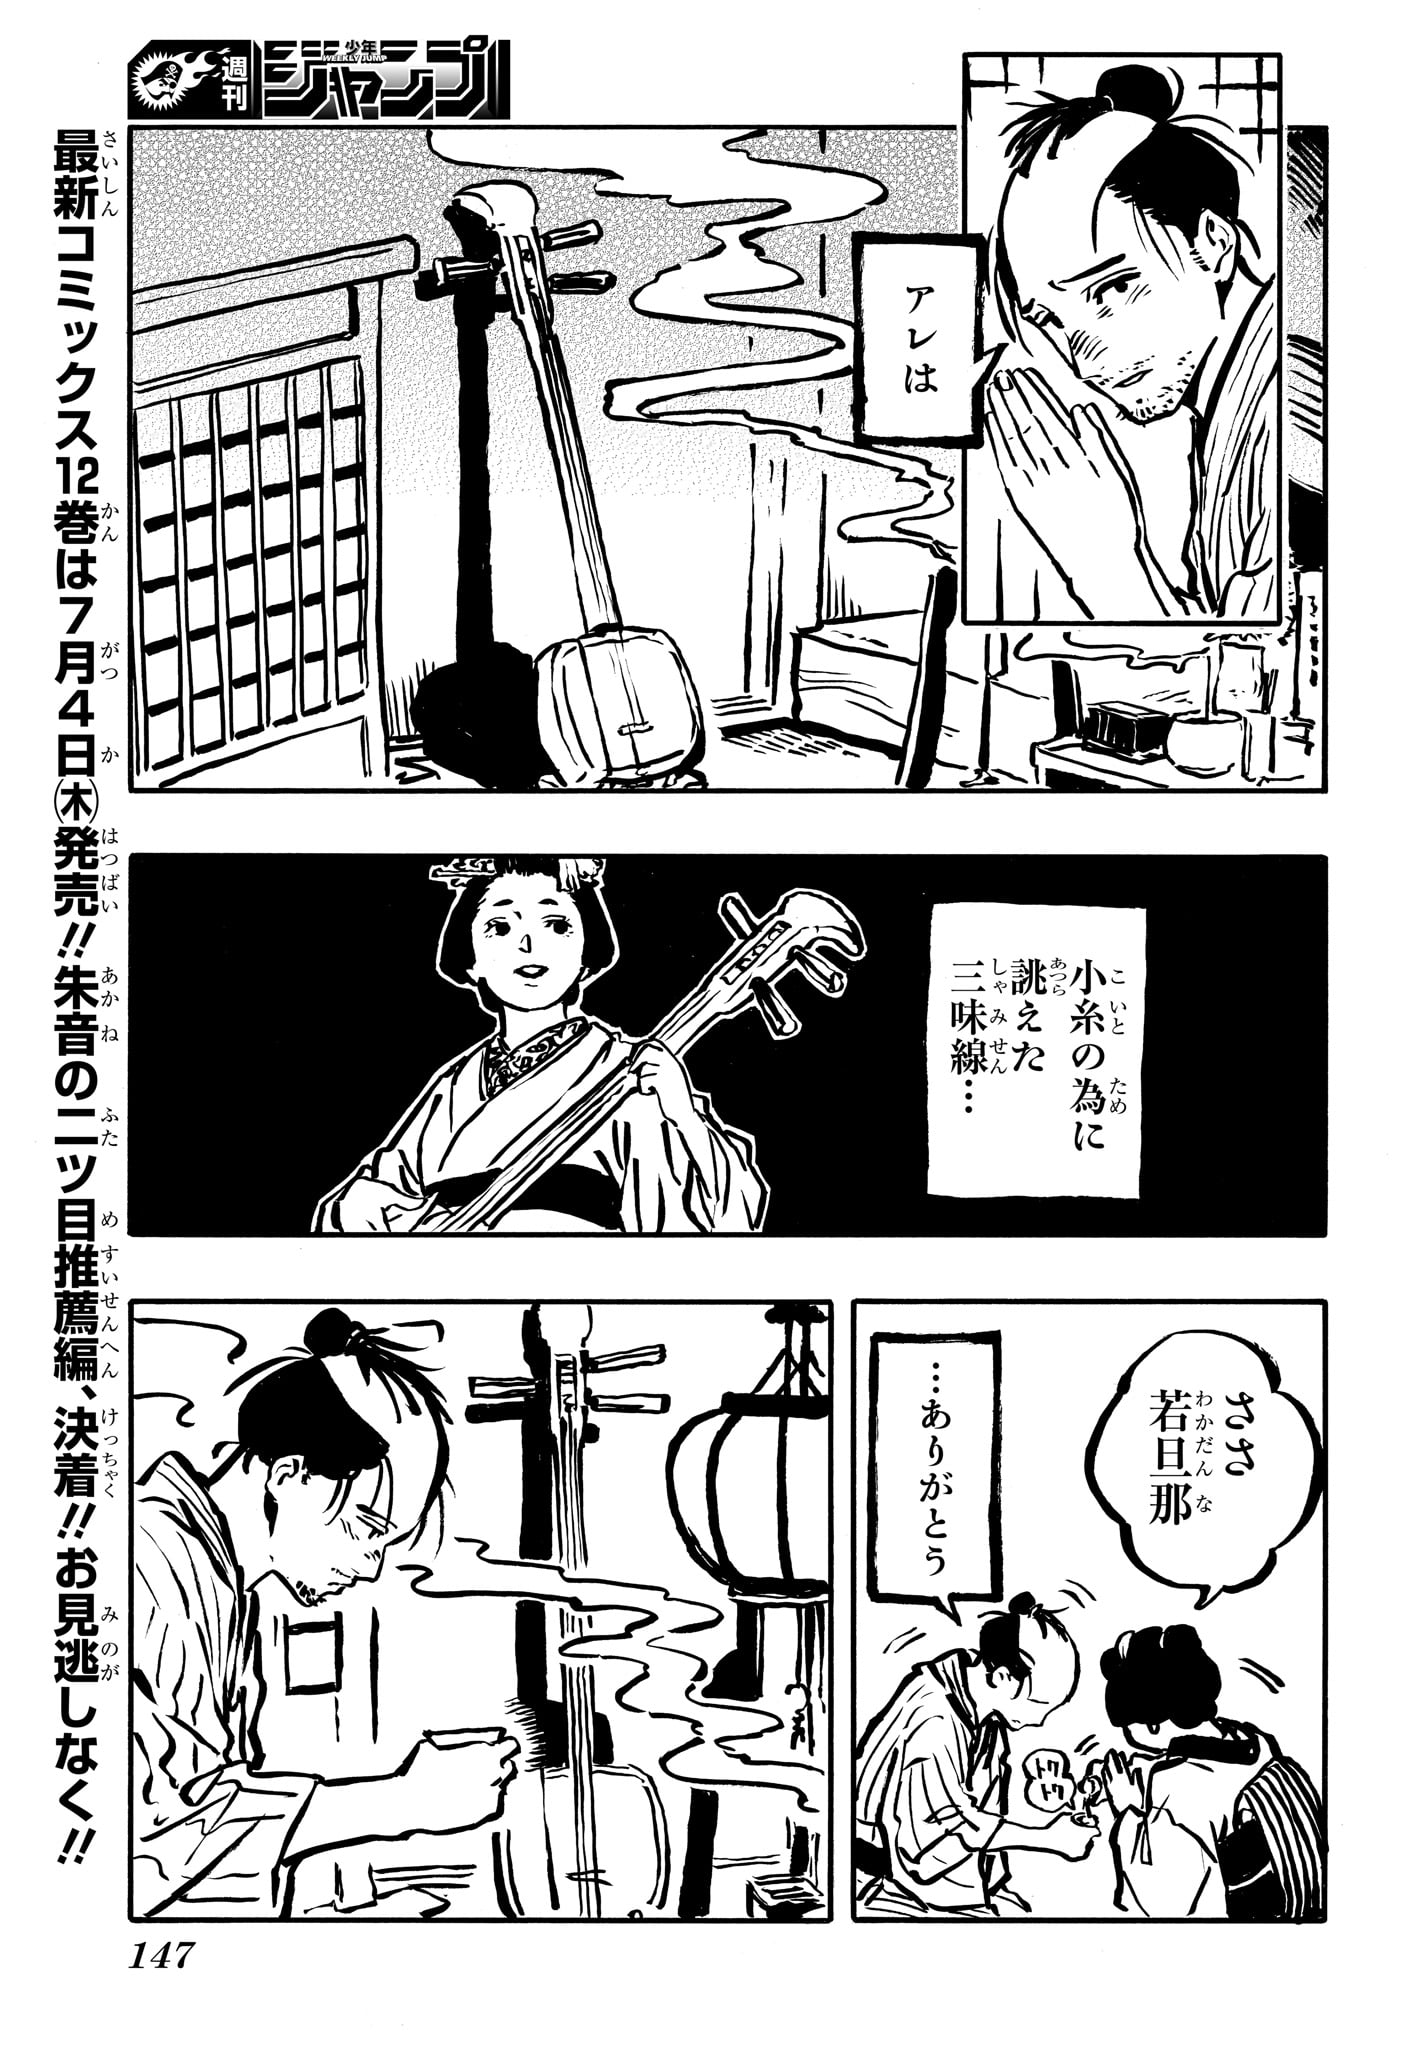 Akane-Banashi - Chapter 115 - Page 3